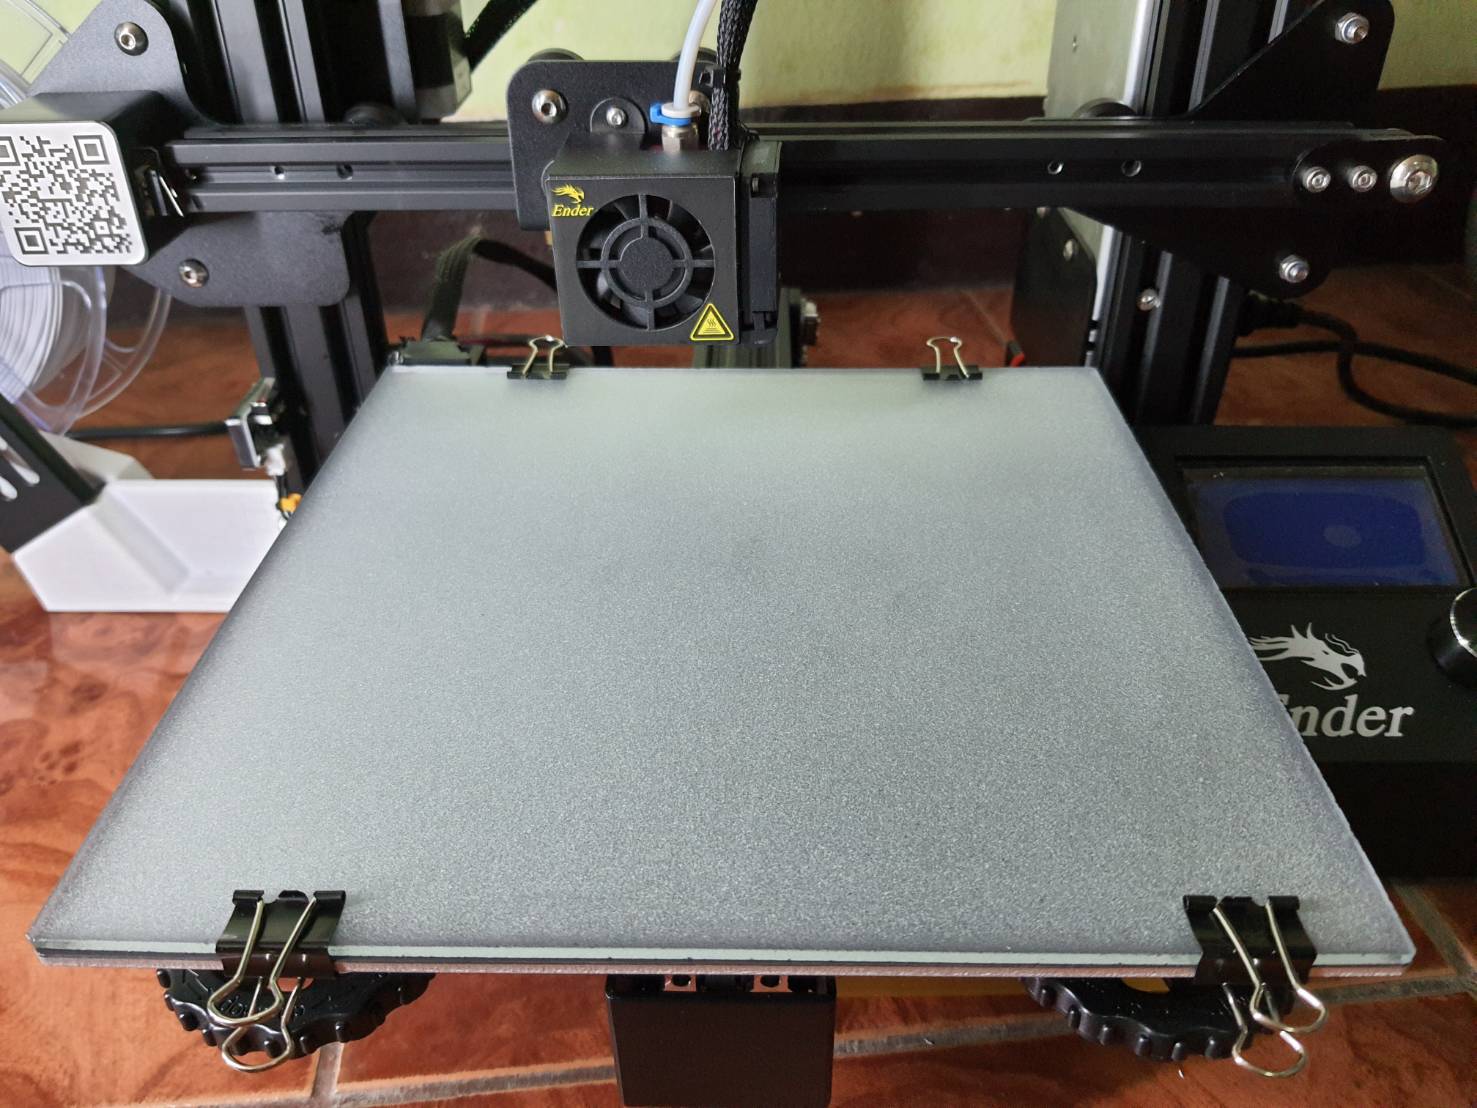 Crystal Glass Print Bed Platform Build Surface 235*235mm for Ender 3/3Pro/V2. Printer Hotbed (พิเศษ